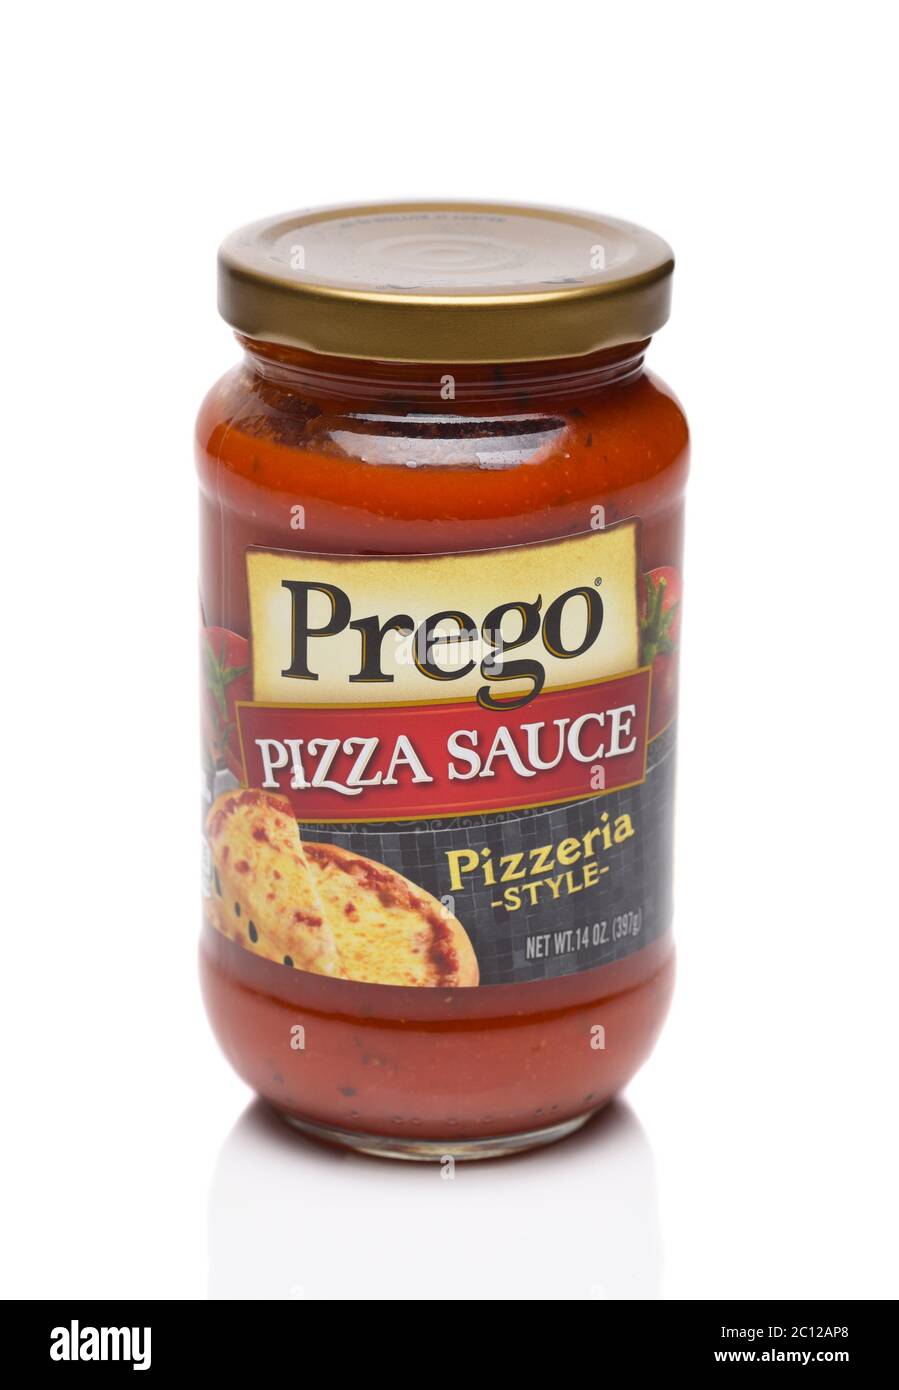 IRVINE, CALIFORNIE - 25 MAI 2020 : un pot de sauce à la pizza Prego, style Pizzeria. Banque D'Images